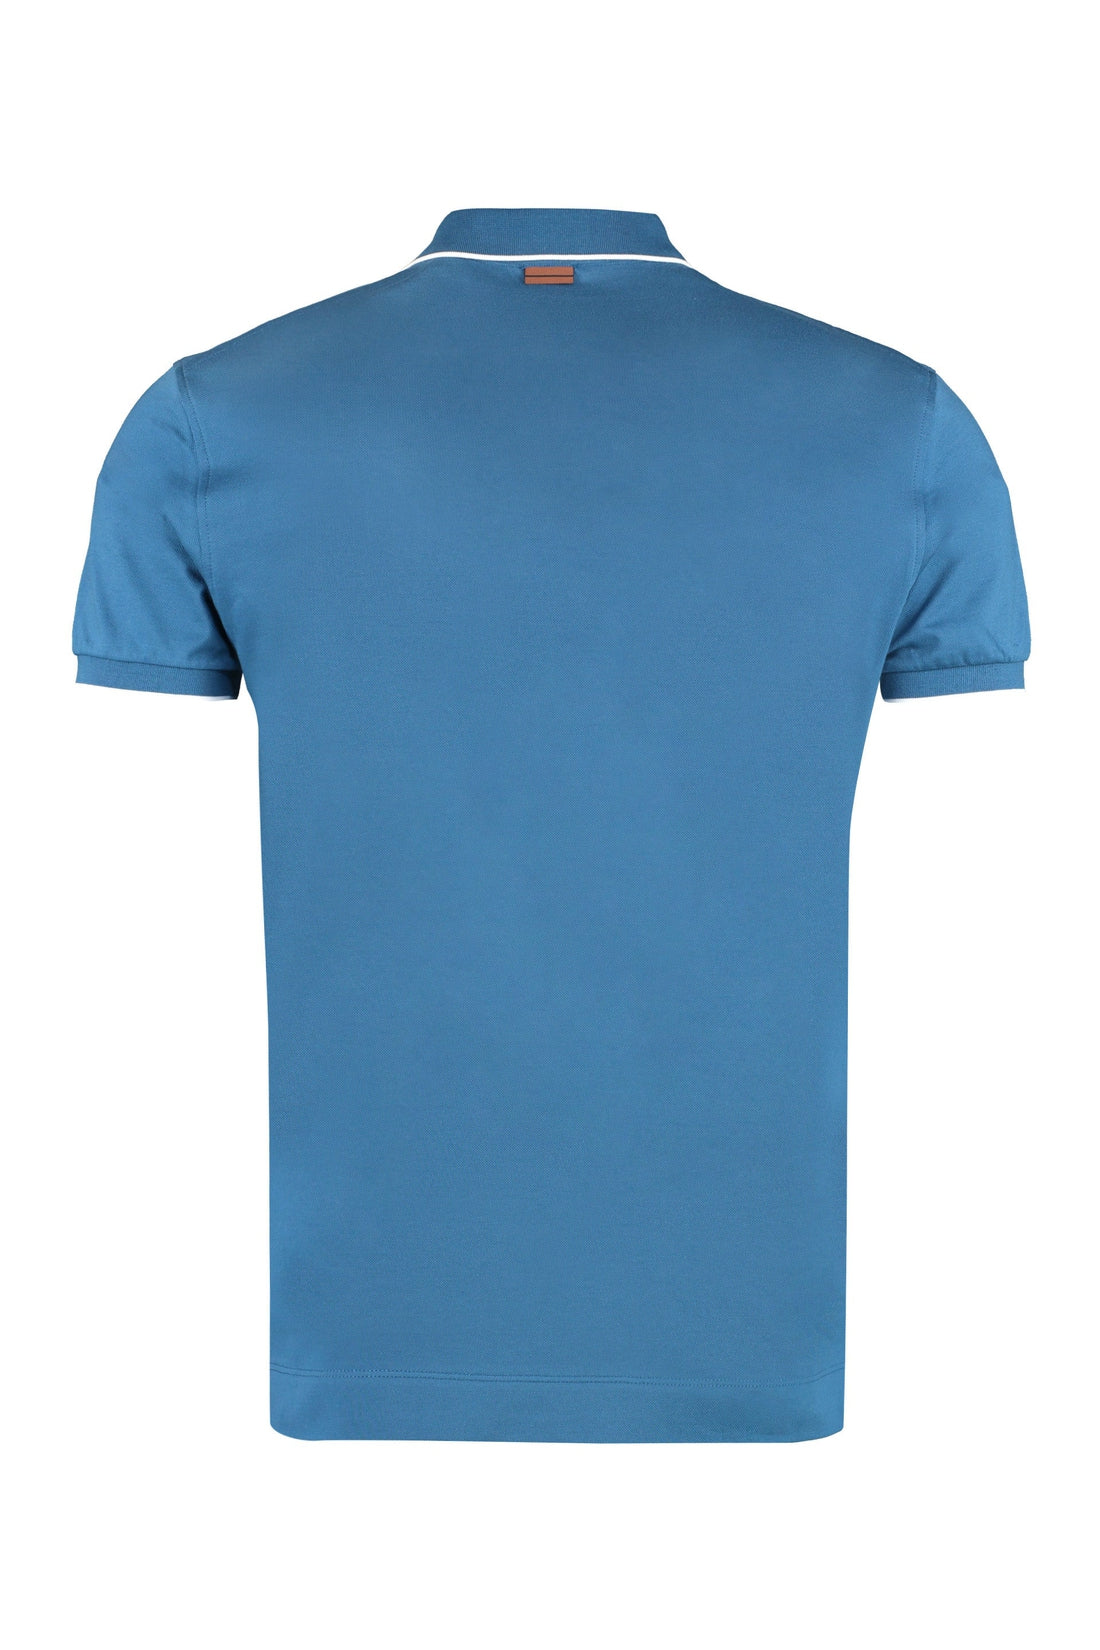 Zegna-OUTLET-SALE-Short sleeve cotton polo shirt-ARCHIVIST